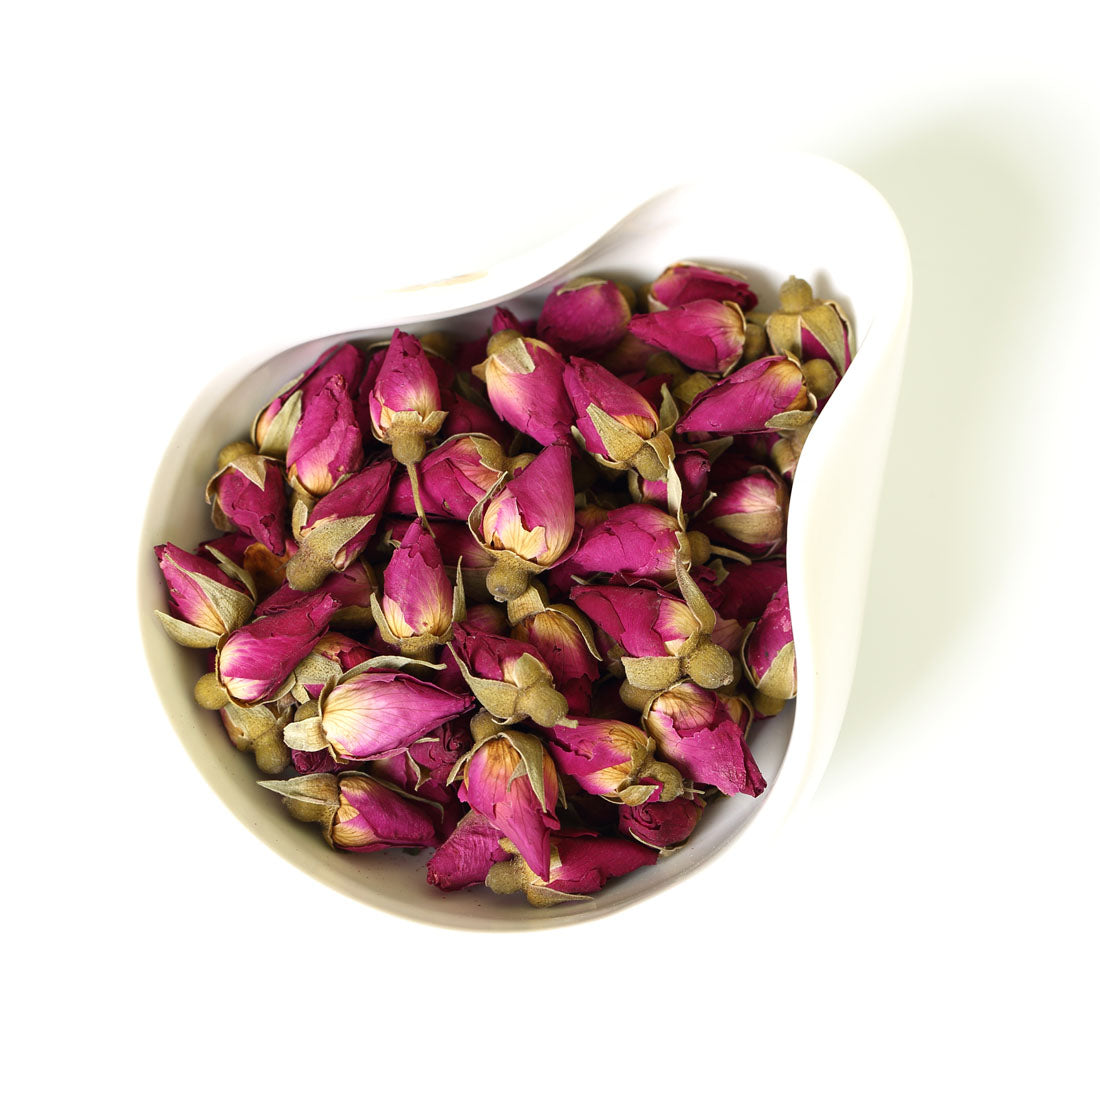 1 oz EDIBLE PINK ROSE PETALS Tea Dried Flowers Bud Flower